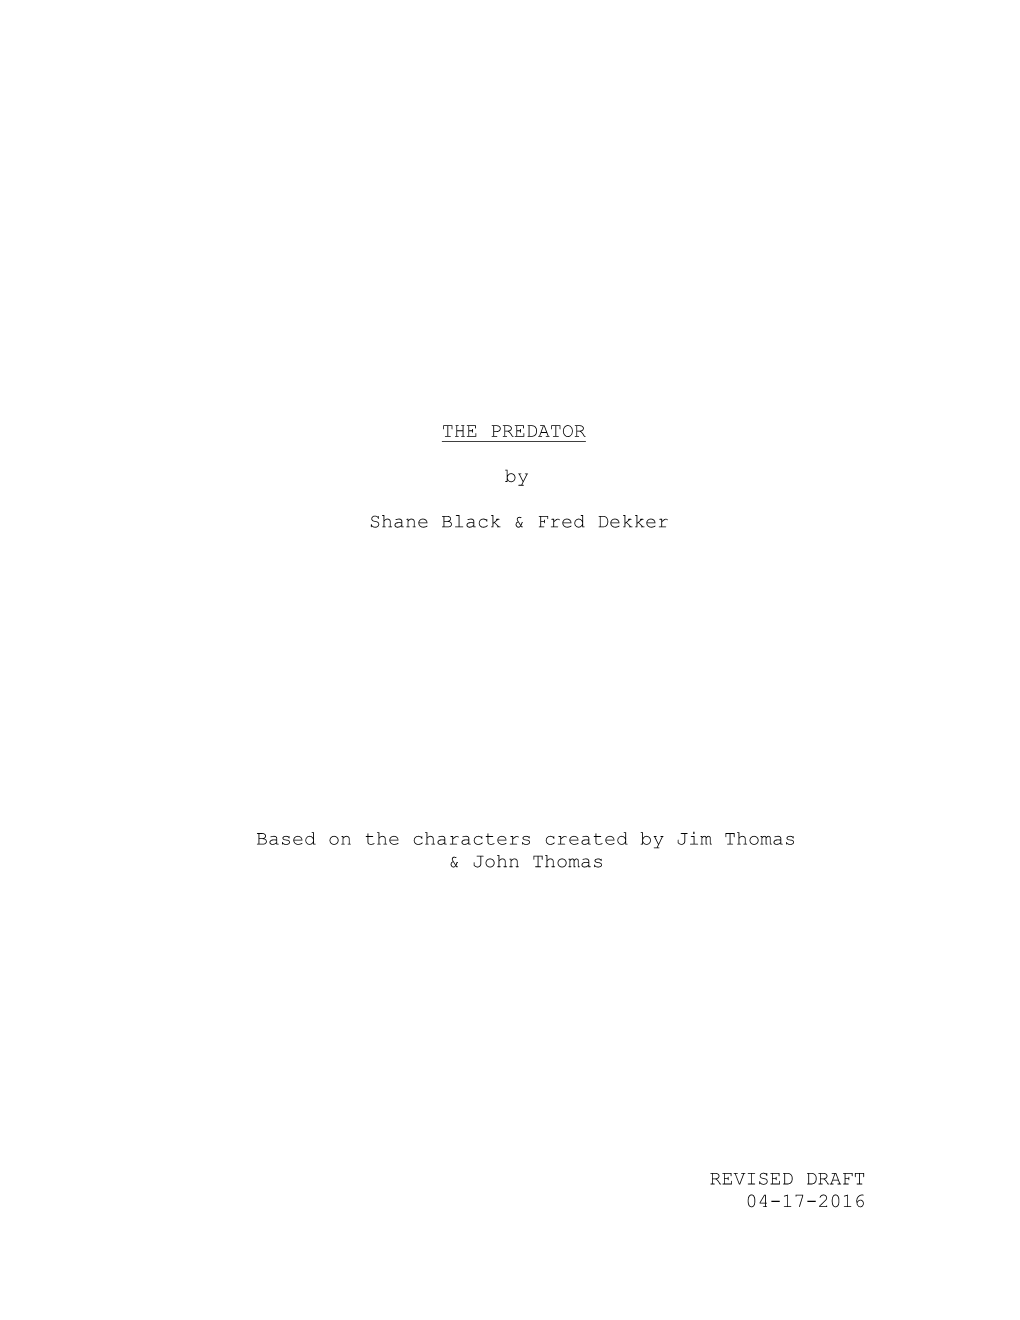 The Predator Script